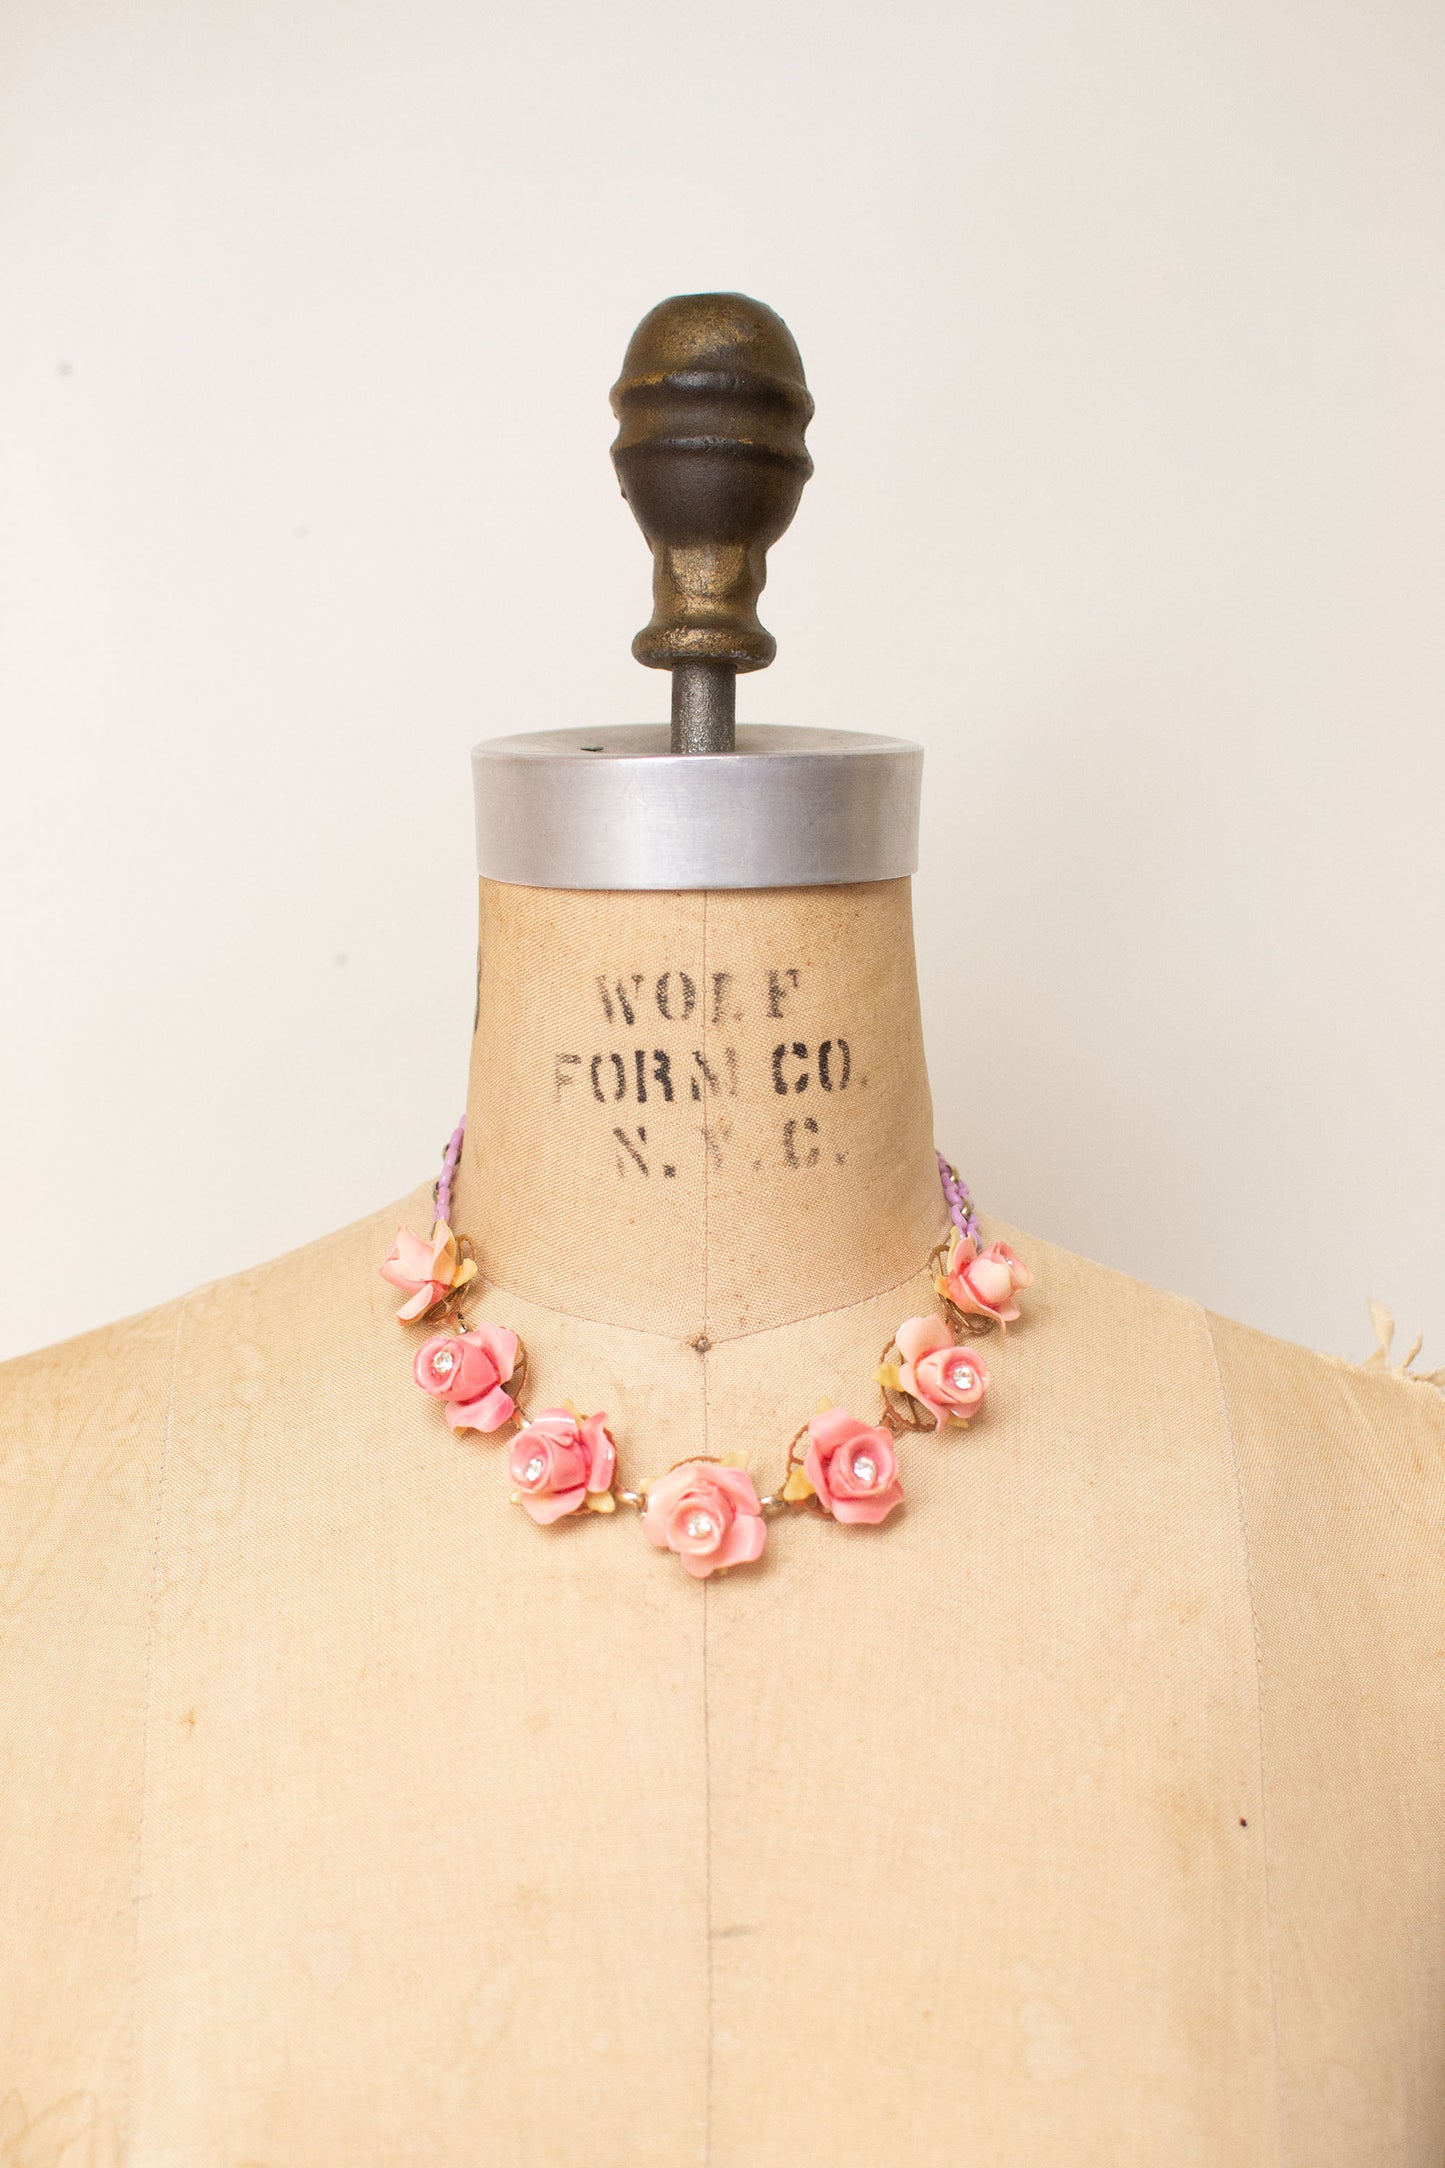 1950s Pink Rosebud Choker & Earrings Set